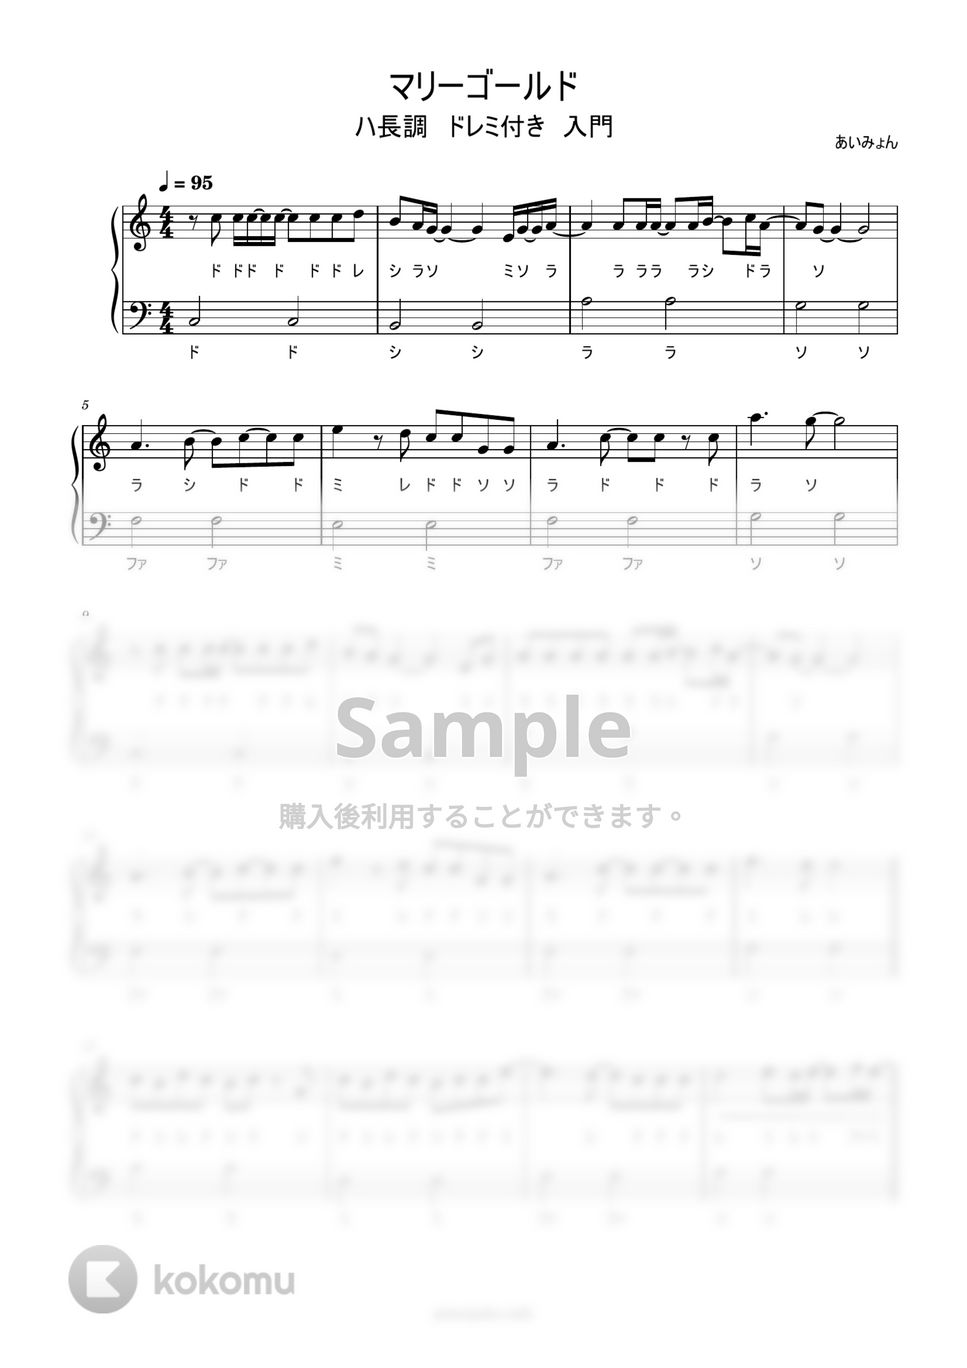 あいみょん - マリーゴールド (ハ長調ドレミ付き簡単楽譜) by ピアノ塾